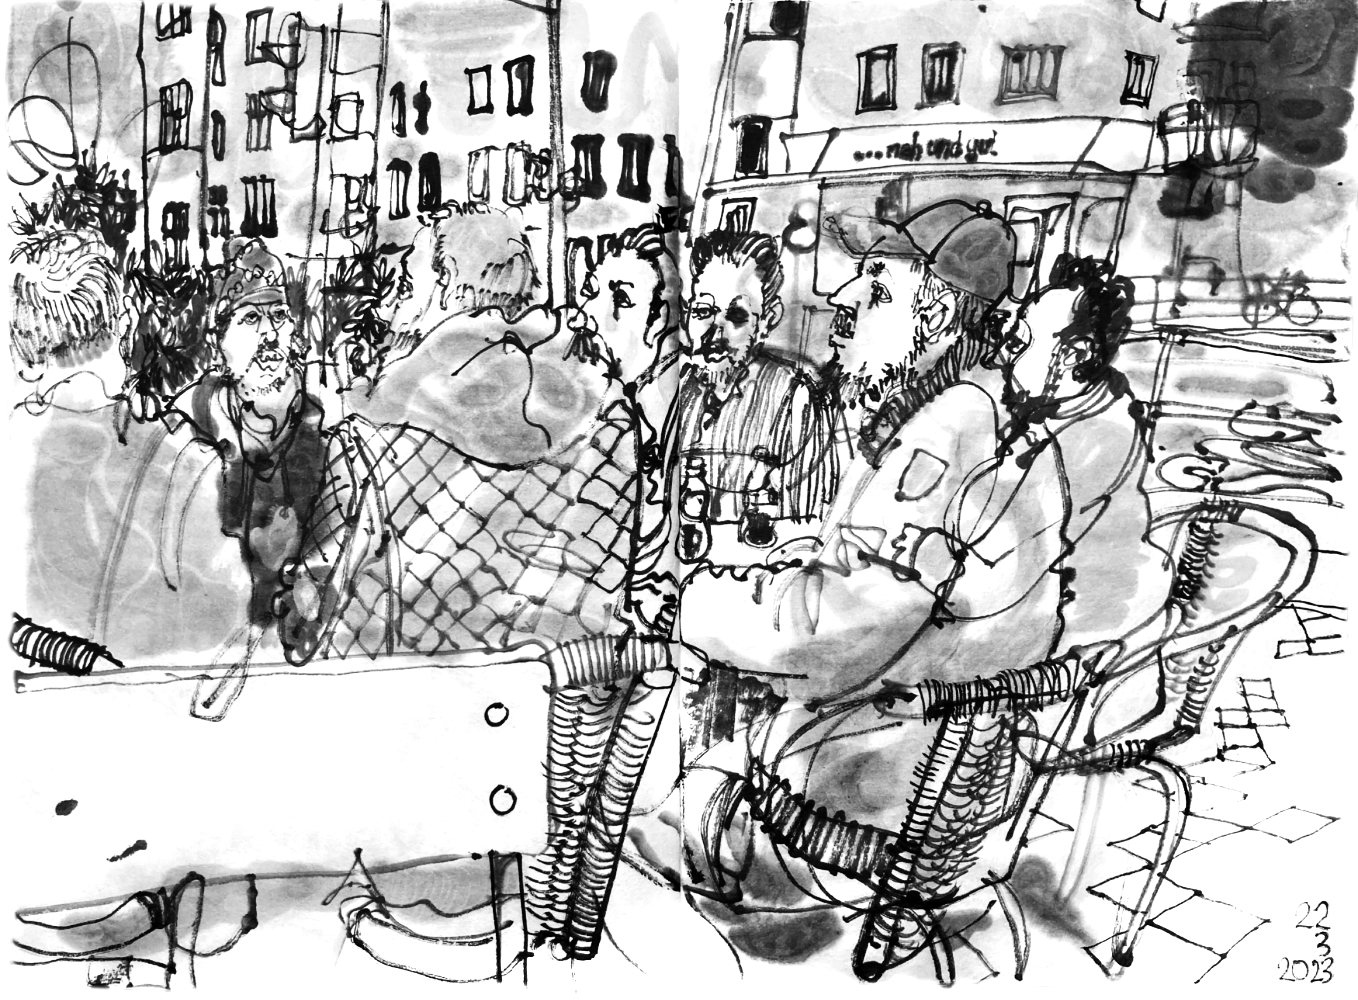 Eine Gruppe Männer vor dem Imbiss Enjoy Kebap